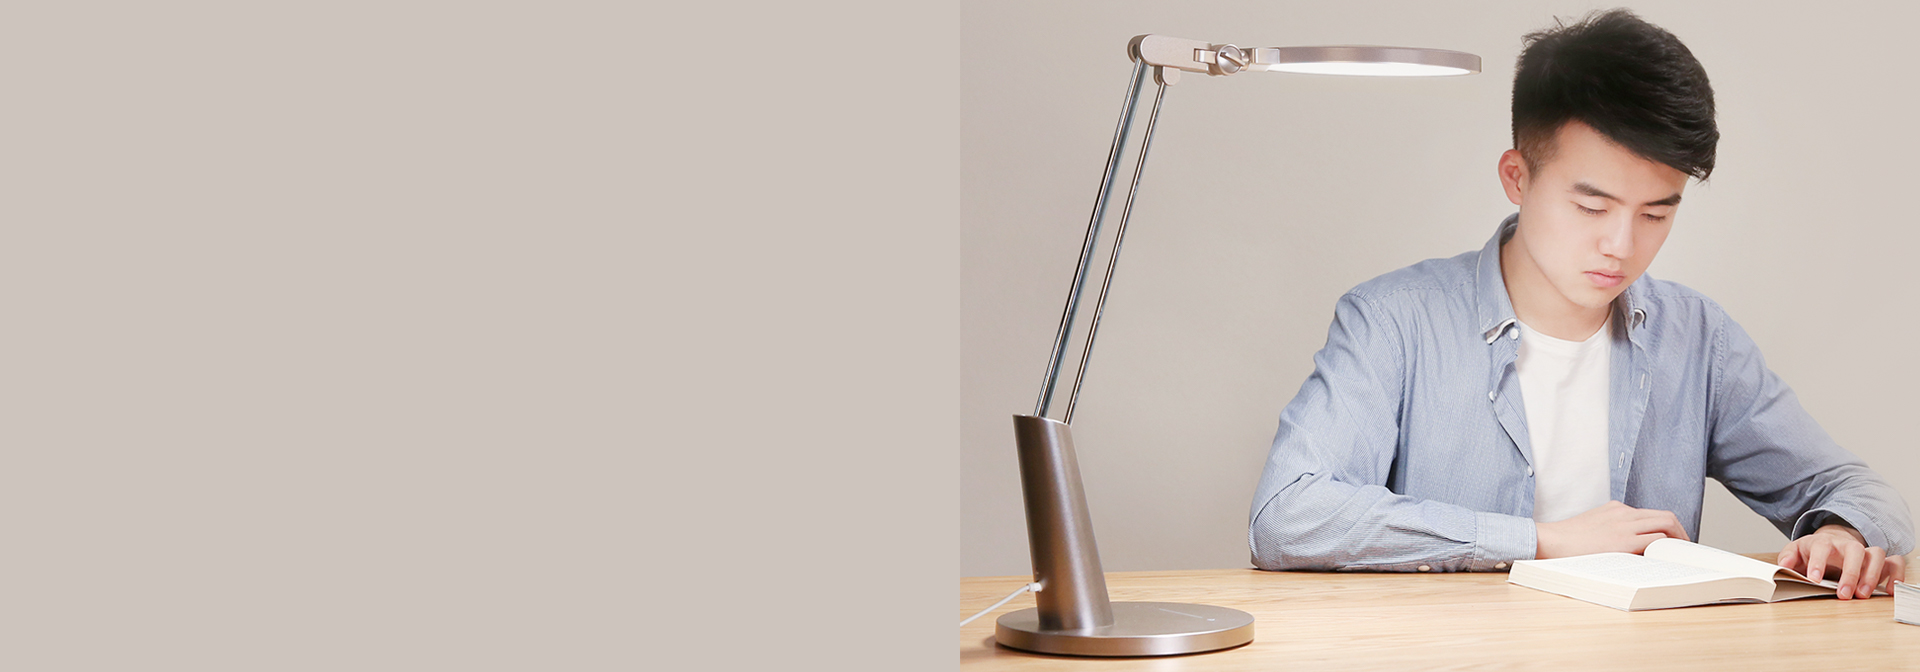 Eine Lampe, die das Augenlicht aller schützt » Augenschonende Serene Schreibtischleuchte Pro